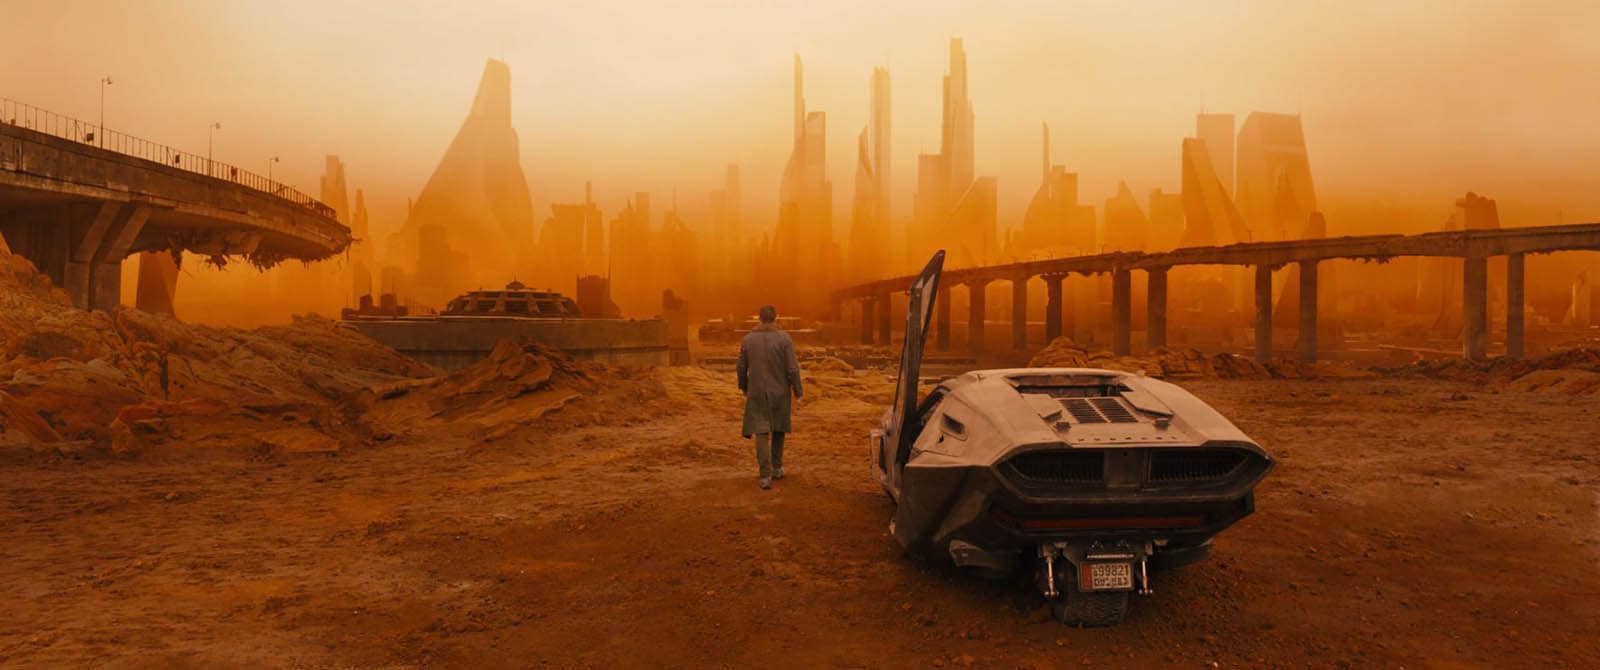 El nuevo mundo de 'Blade Runner' no solo tiene oscuridad